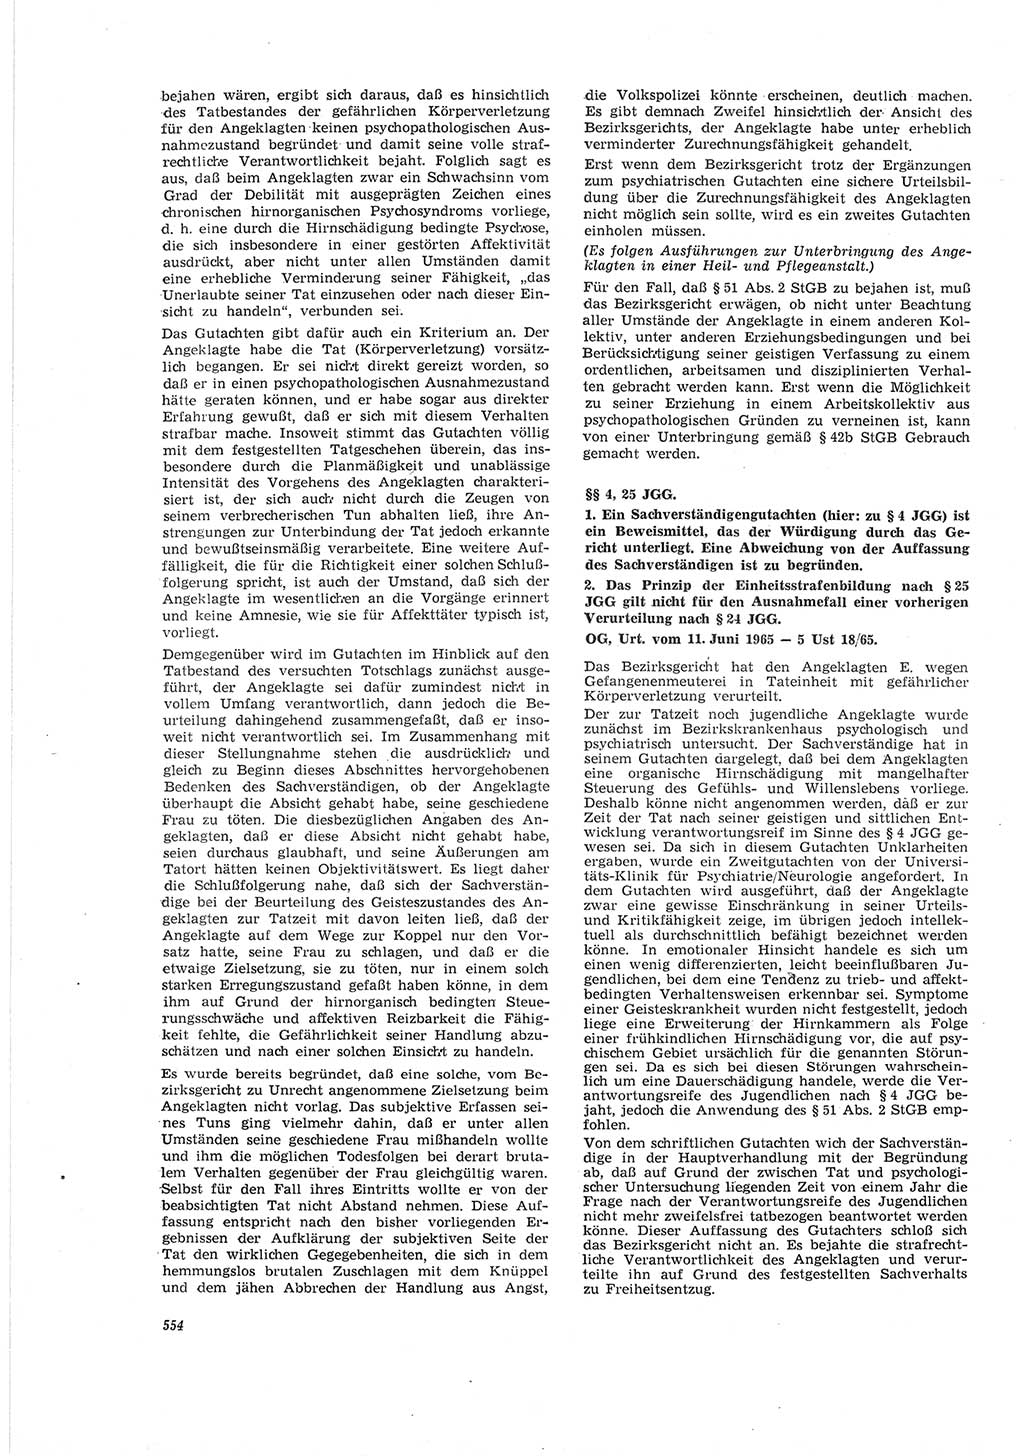 Neue Justiz (NJ), Zeitschrift für Recht und Rechtswissenschaft [Deutsche Demokratische Republik (DDR)], 19. Jahrgang 1965, Seite 554 (NJ DDR 1965, S. 554)